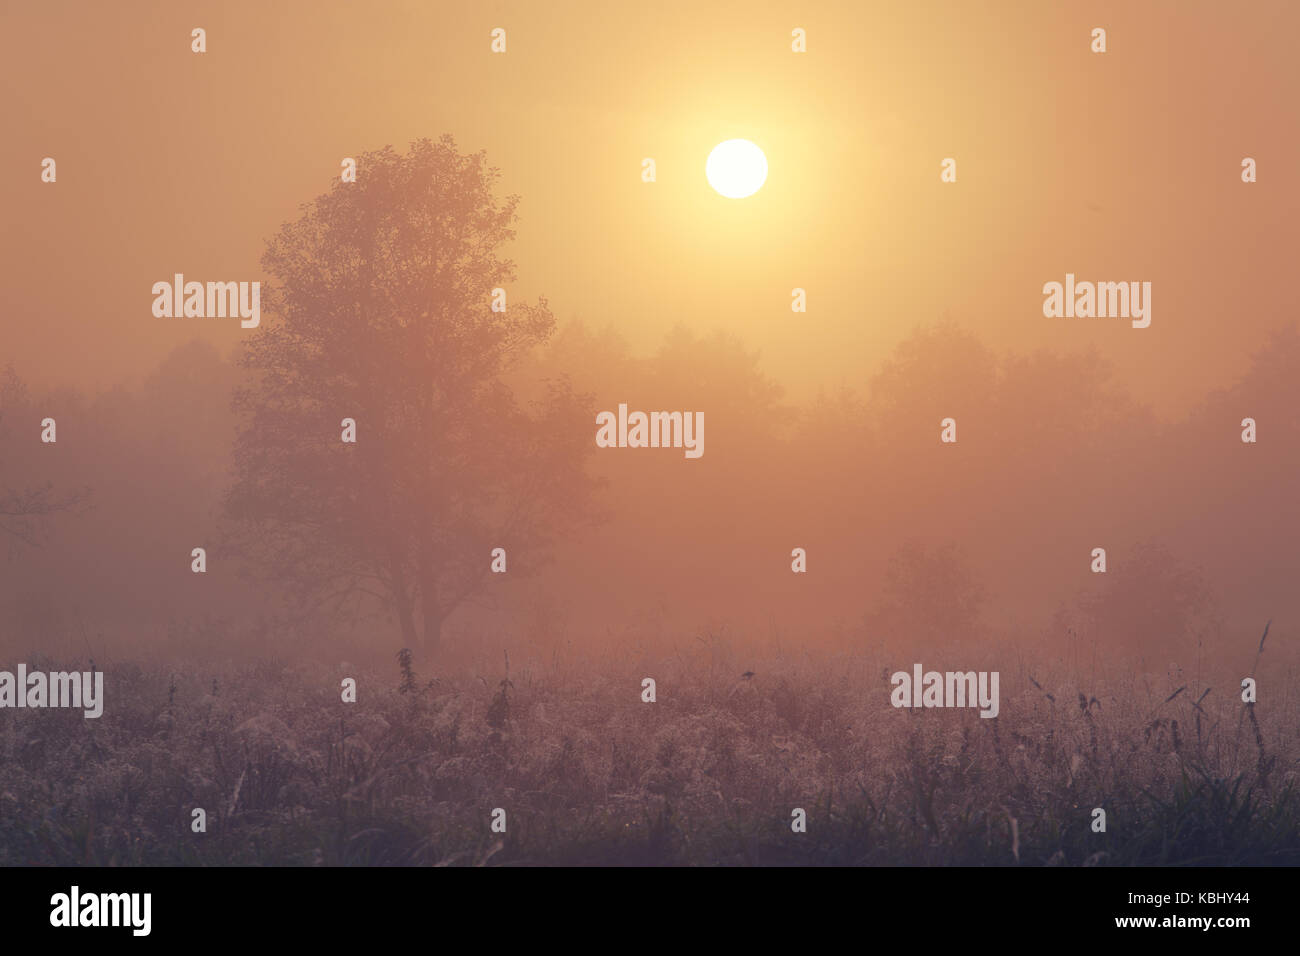 Autumn foggy morning. Sun illuminates foggy autumn nature. Stock Photo